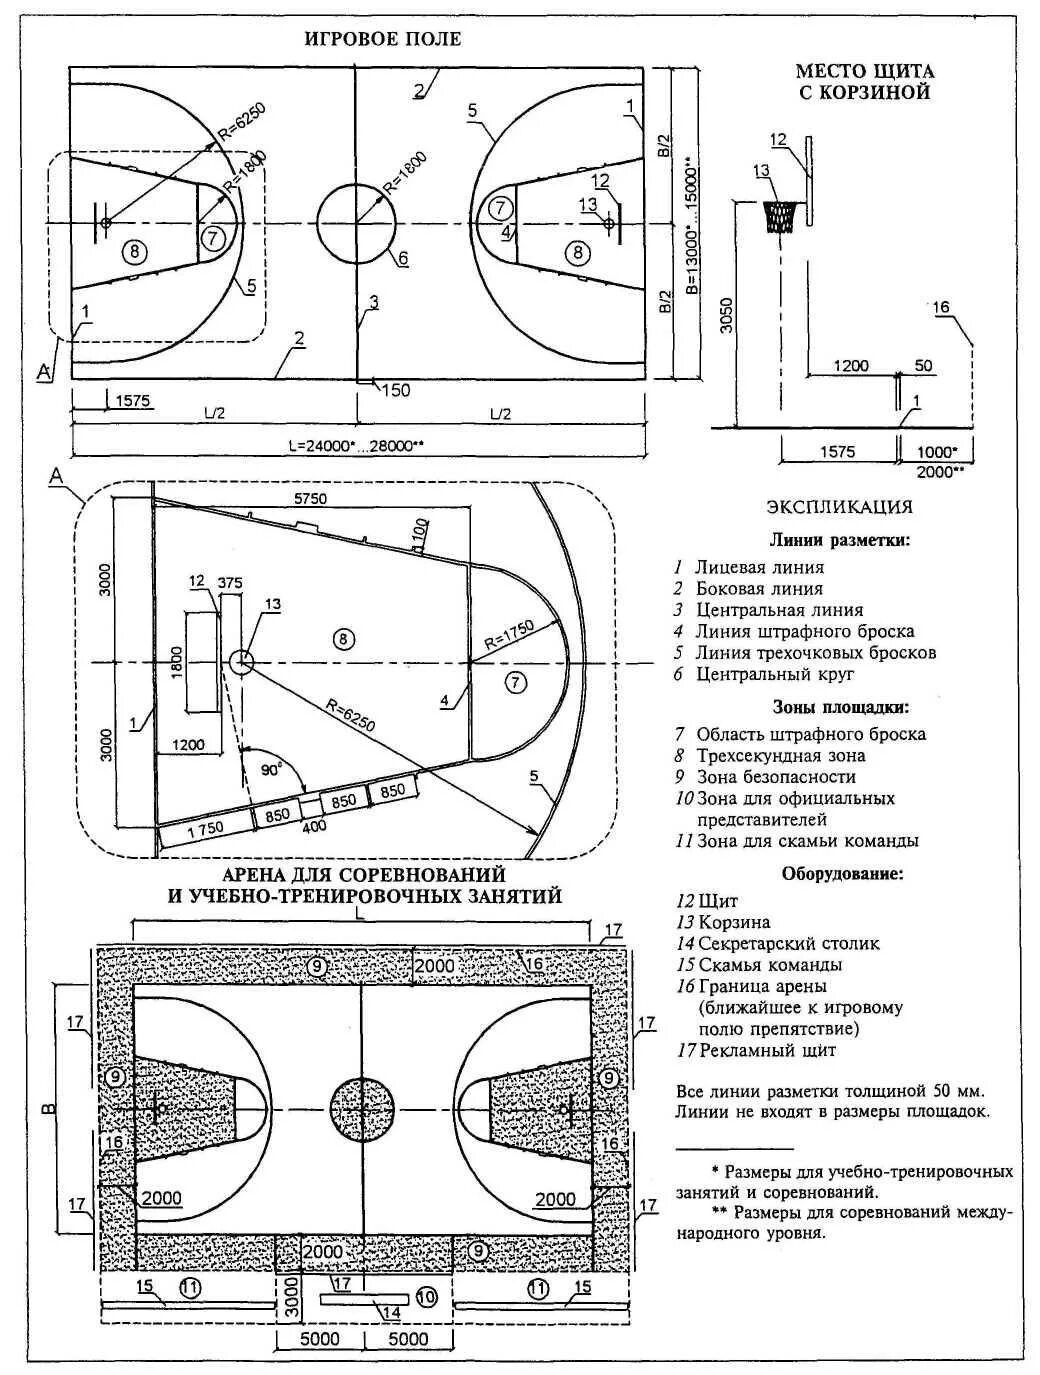 Размер баскетбольной площадки в баскетболе. Схема разметки баскетбольной площадки. Чертёж баскетбольной площадки с размерами. Стандартный размер баскетбольной площадки в баскетболе. Размер площадки для баскетбола стандарт.